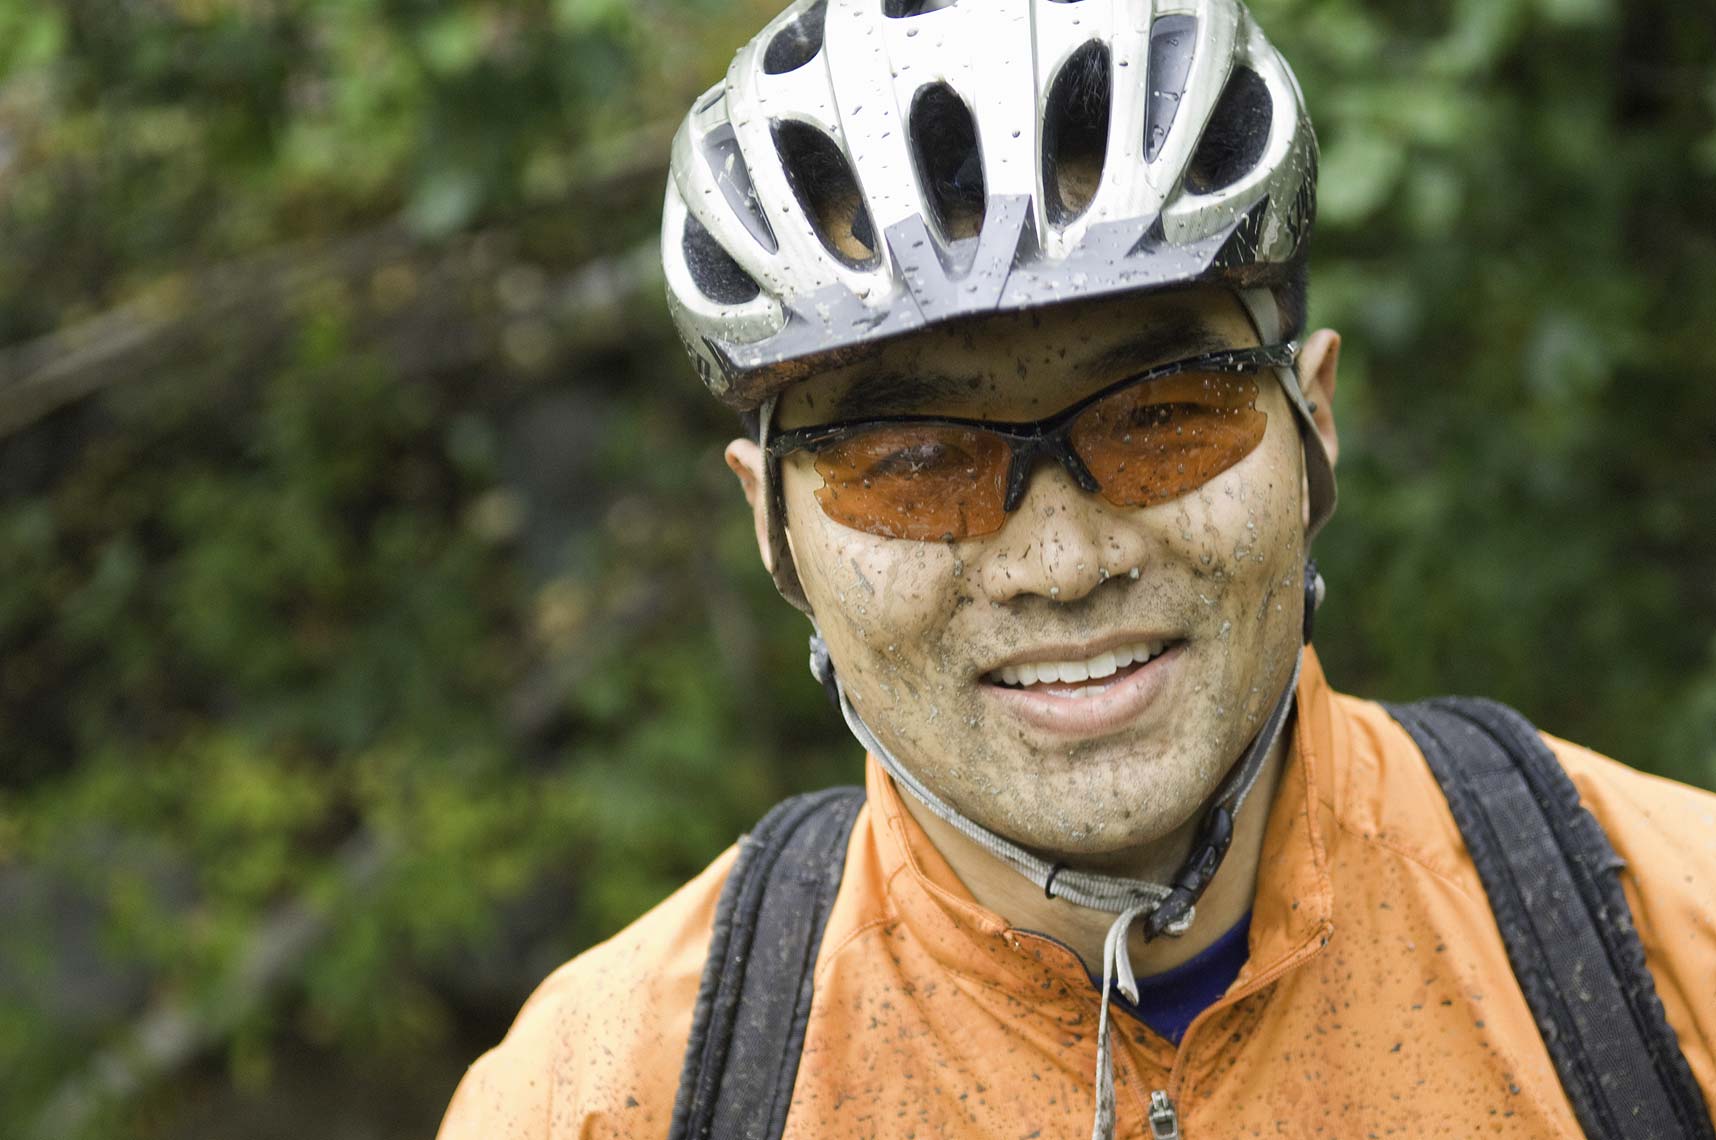 mountain biker portrait